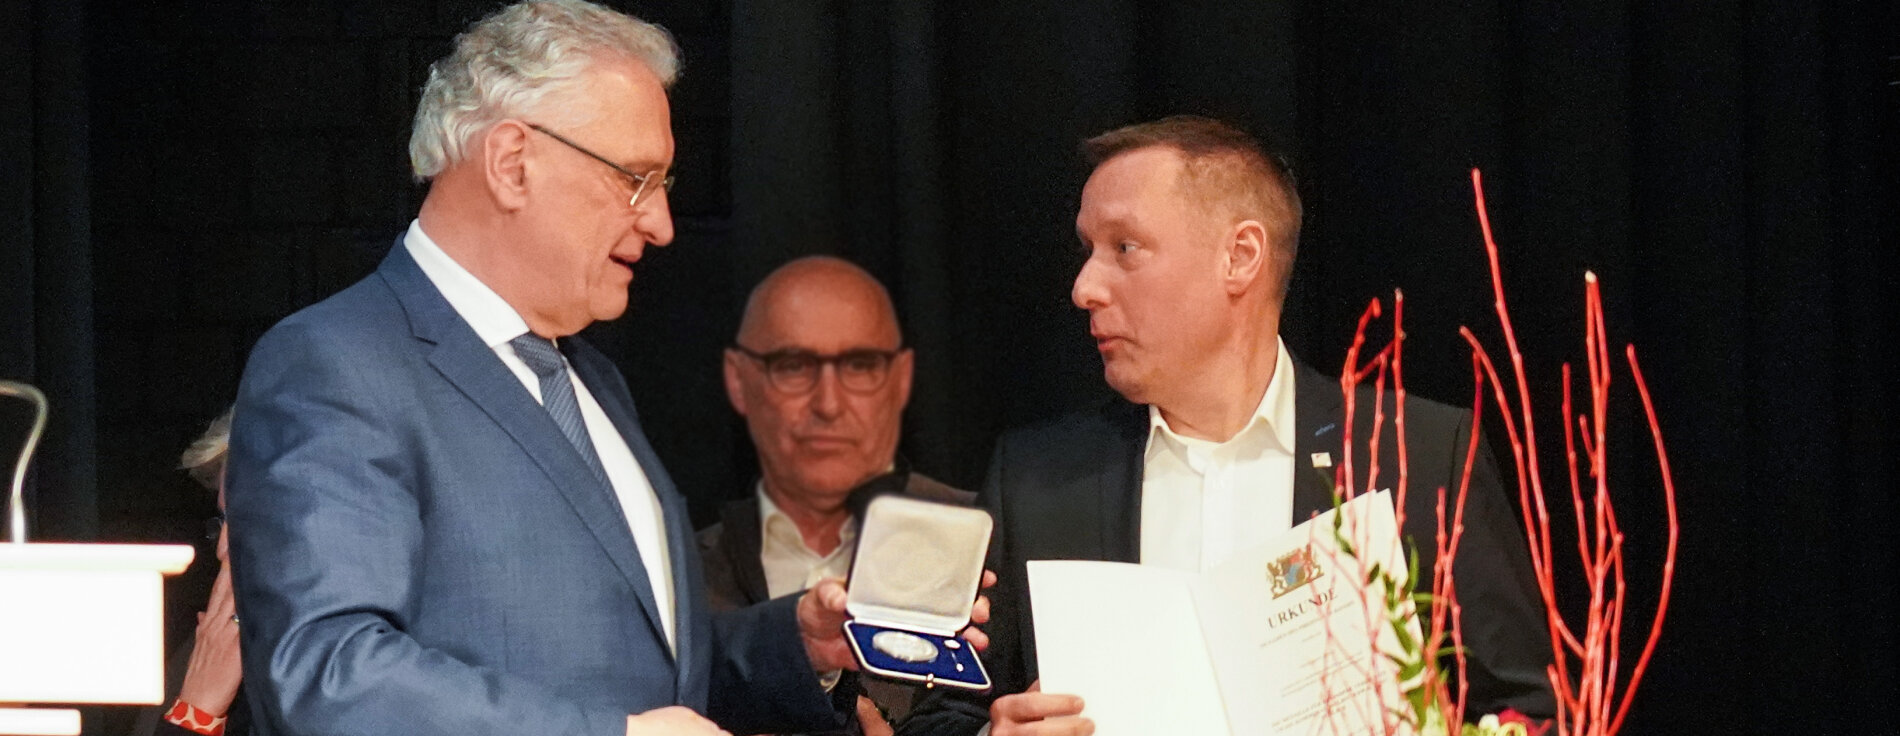 Herrmann überreicht Kroder die Kommunale Verdienstmedaille